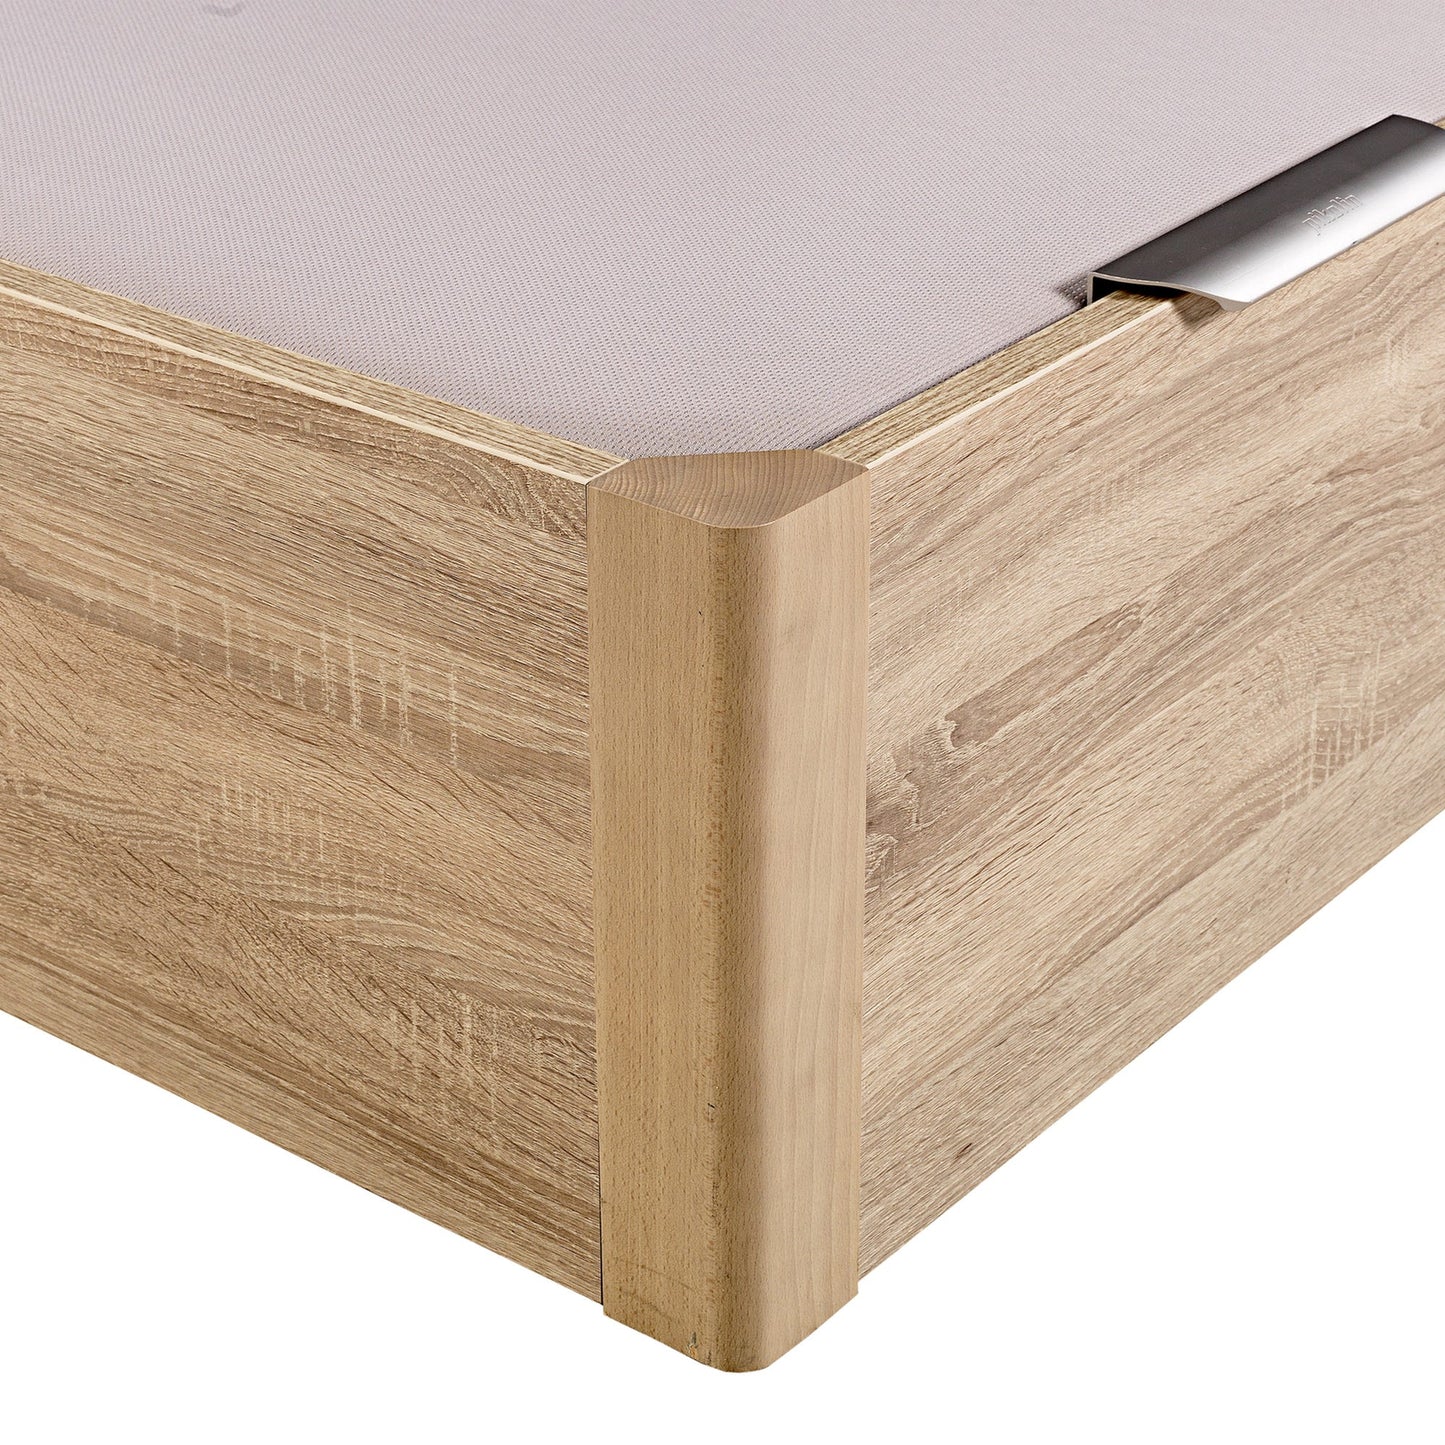 Canapé abatible de madera de alta capacidad tapa doble de color natural - DESIGN - 200x210